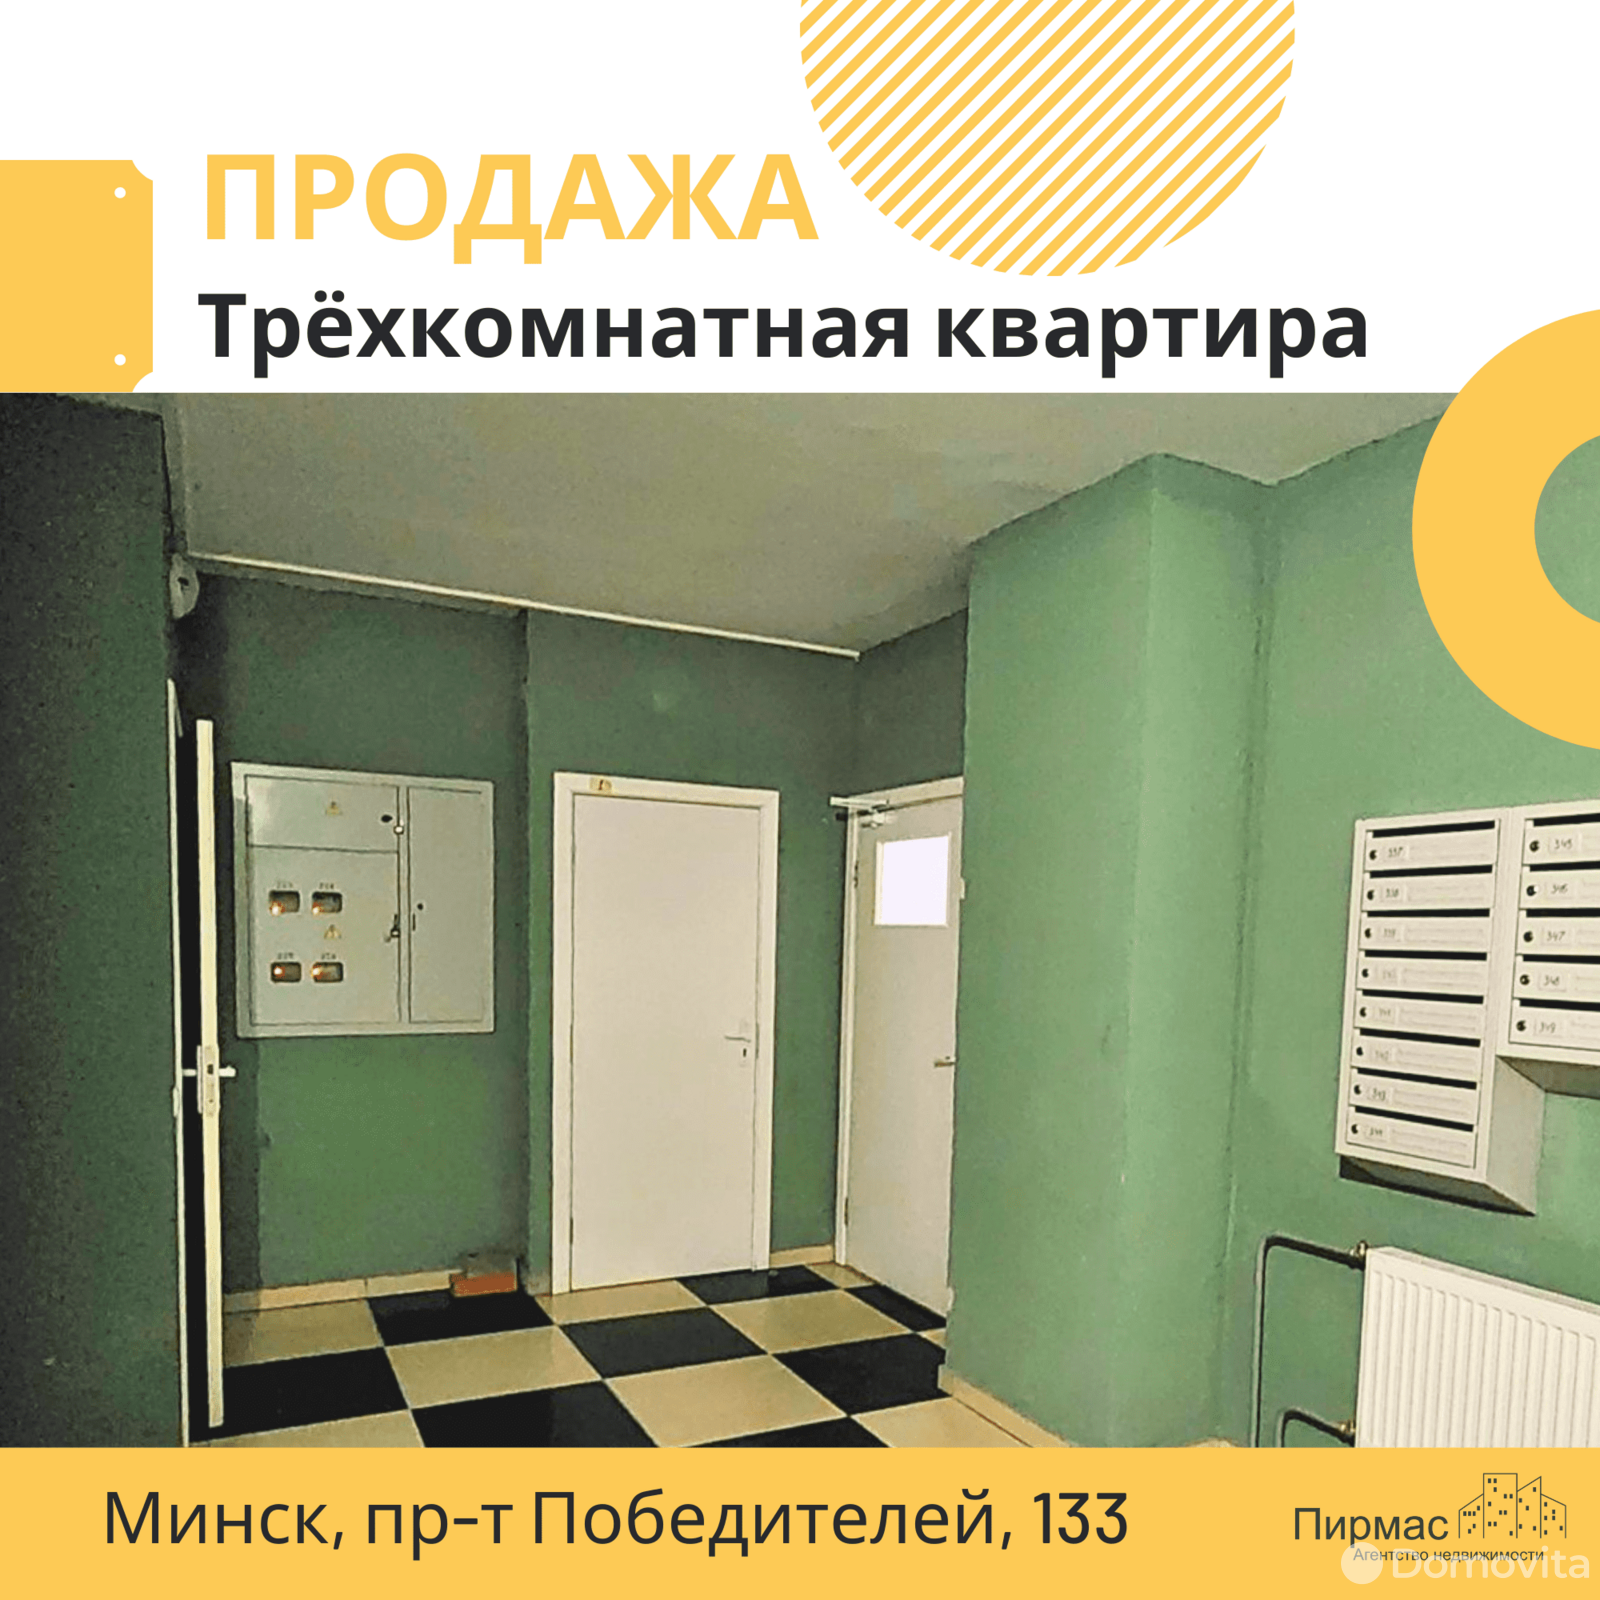 продажа квартиры, Минск, пр-т Победителей, д. 133